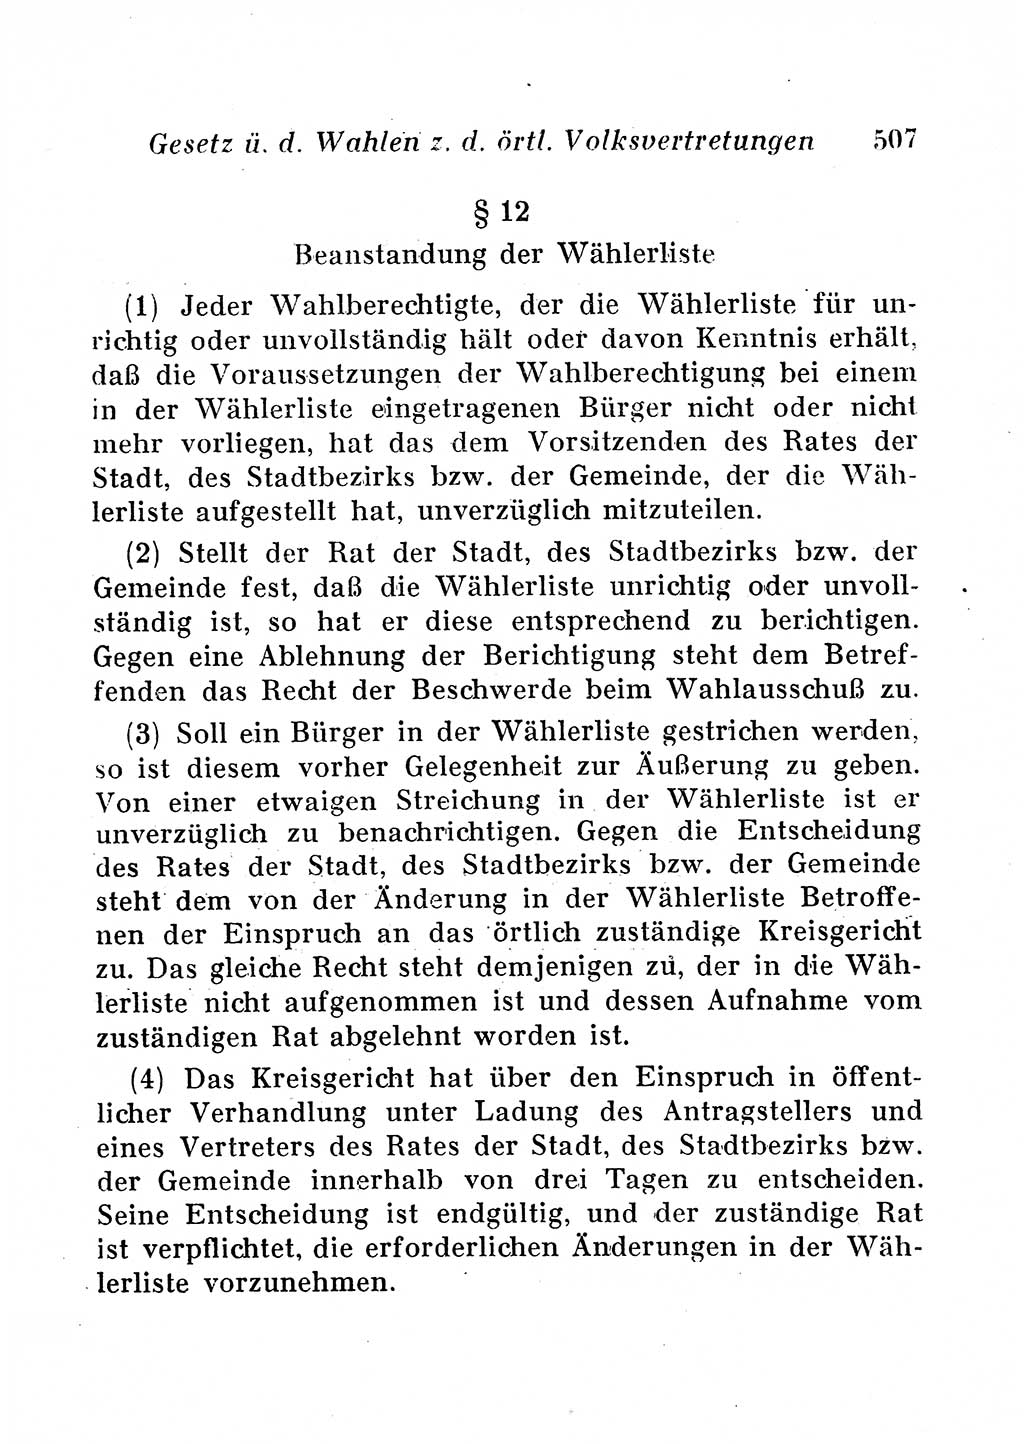 Staats- und verwaltungsrechtliche Gesetze der Deutschen Demokratischen Republik (DDR) 1958, Seite 507 (StVerwR Ges. DDR 1958, S. 507)